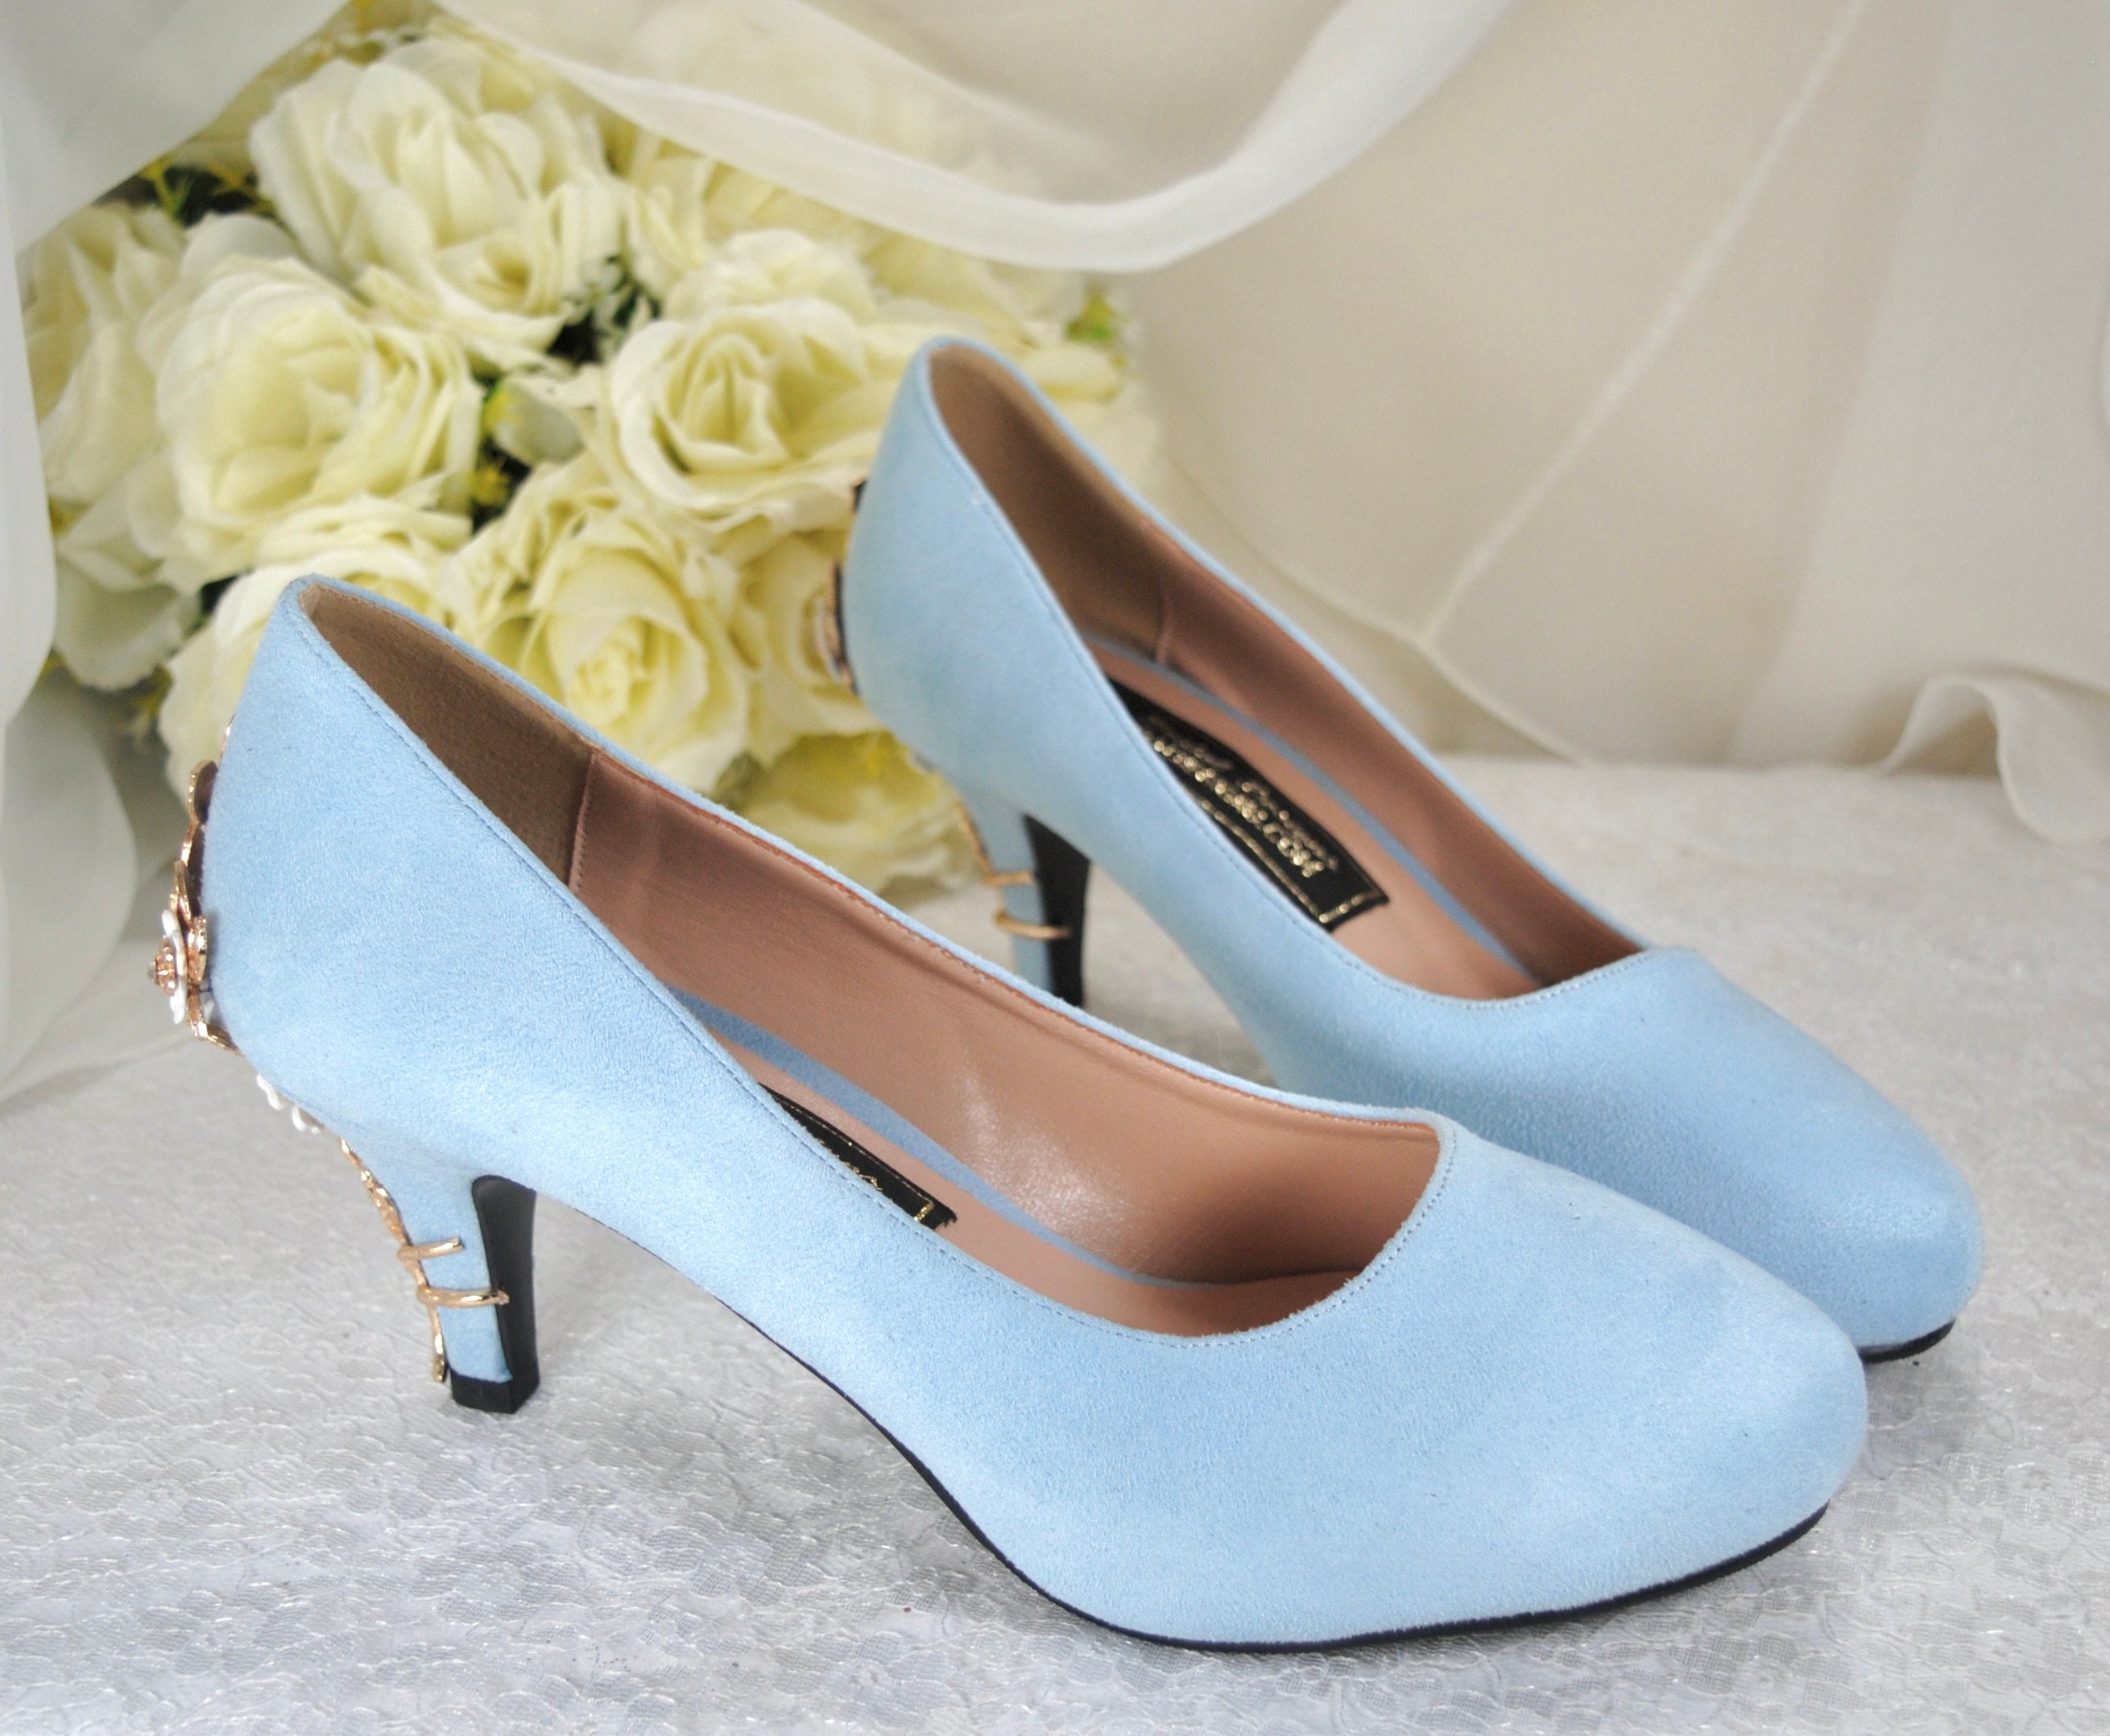 Louboutin Wedding Shoes Blue Sole  Unique wedding shoes, Blue wedding shoes,  Converse wedding shoes